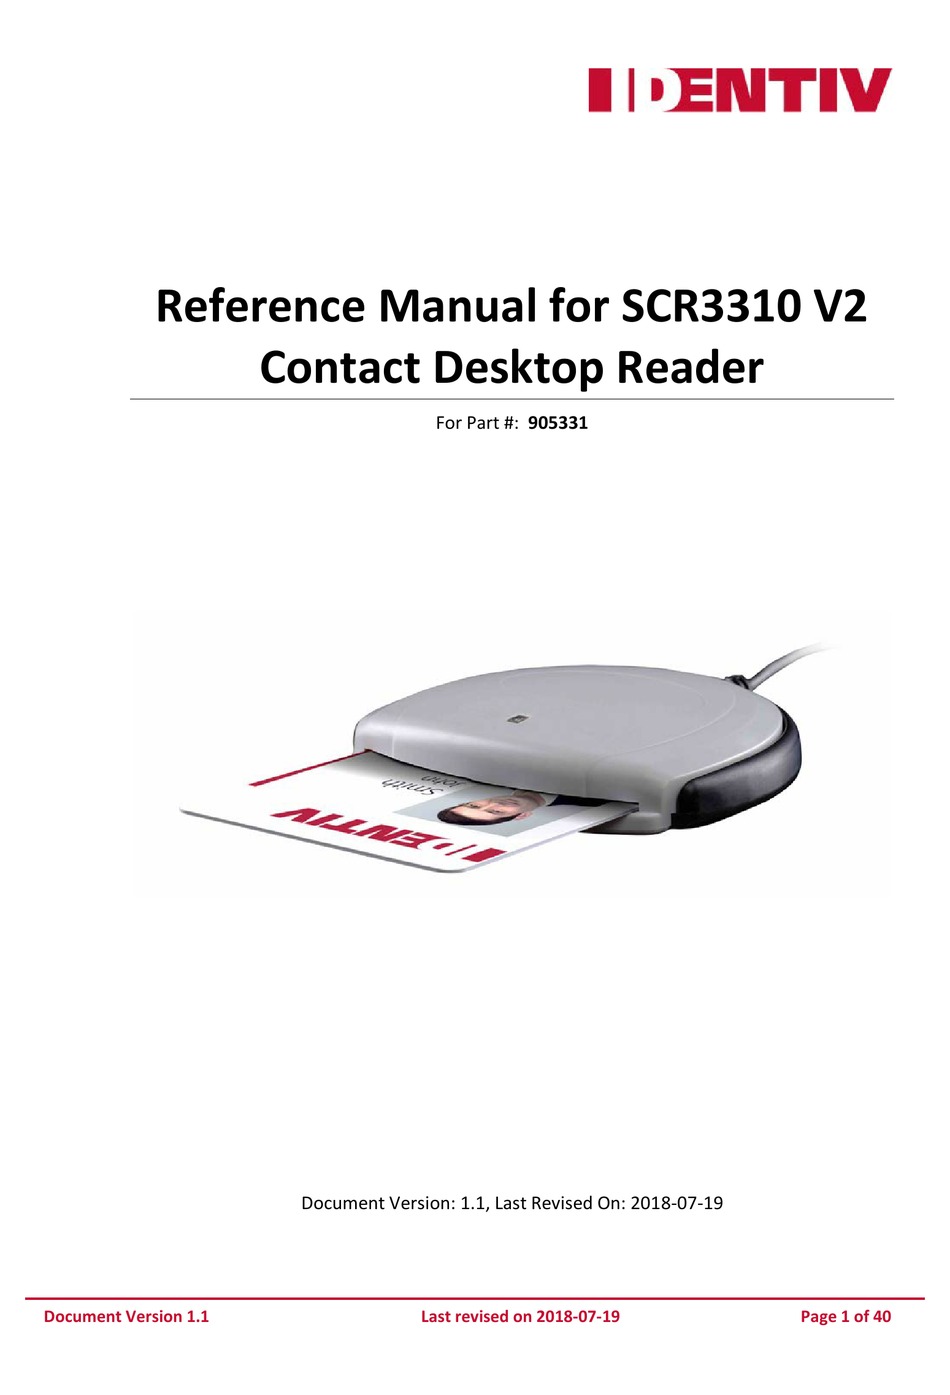 scr3310 smart card reader software download